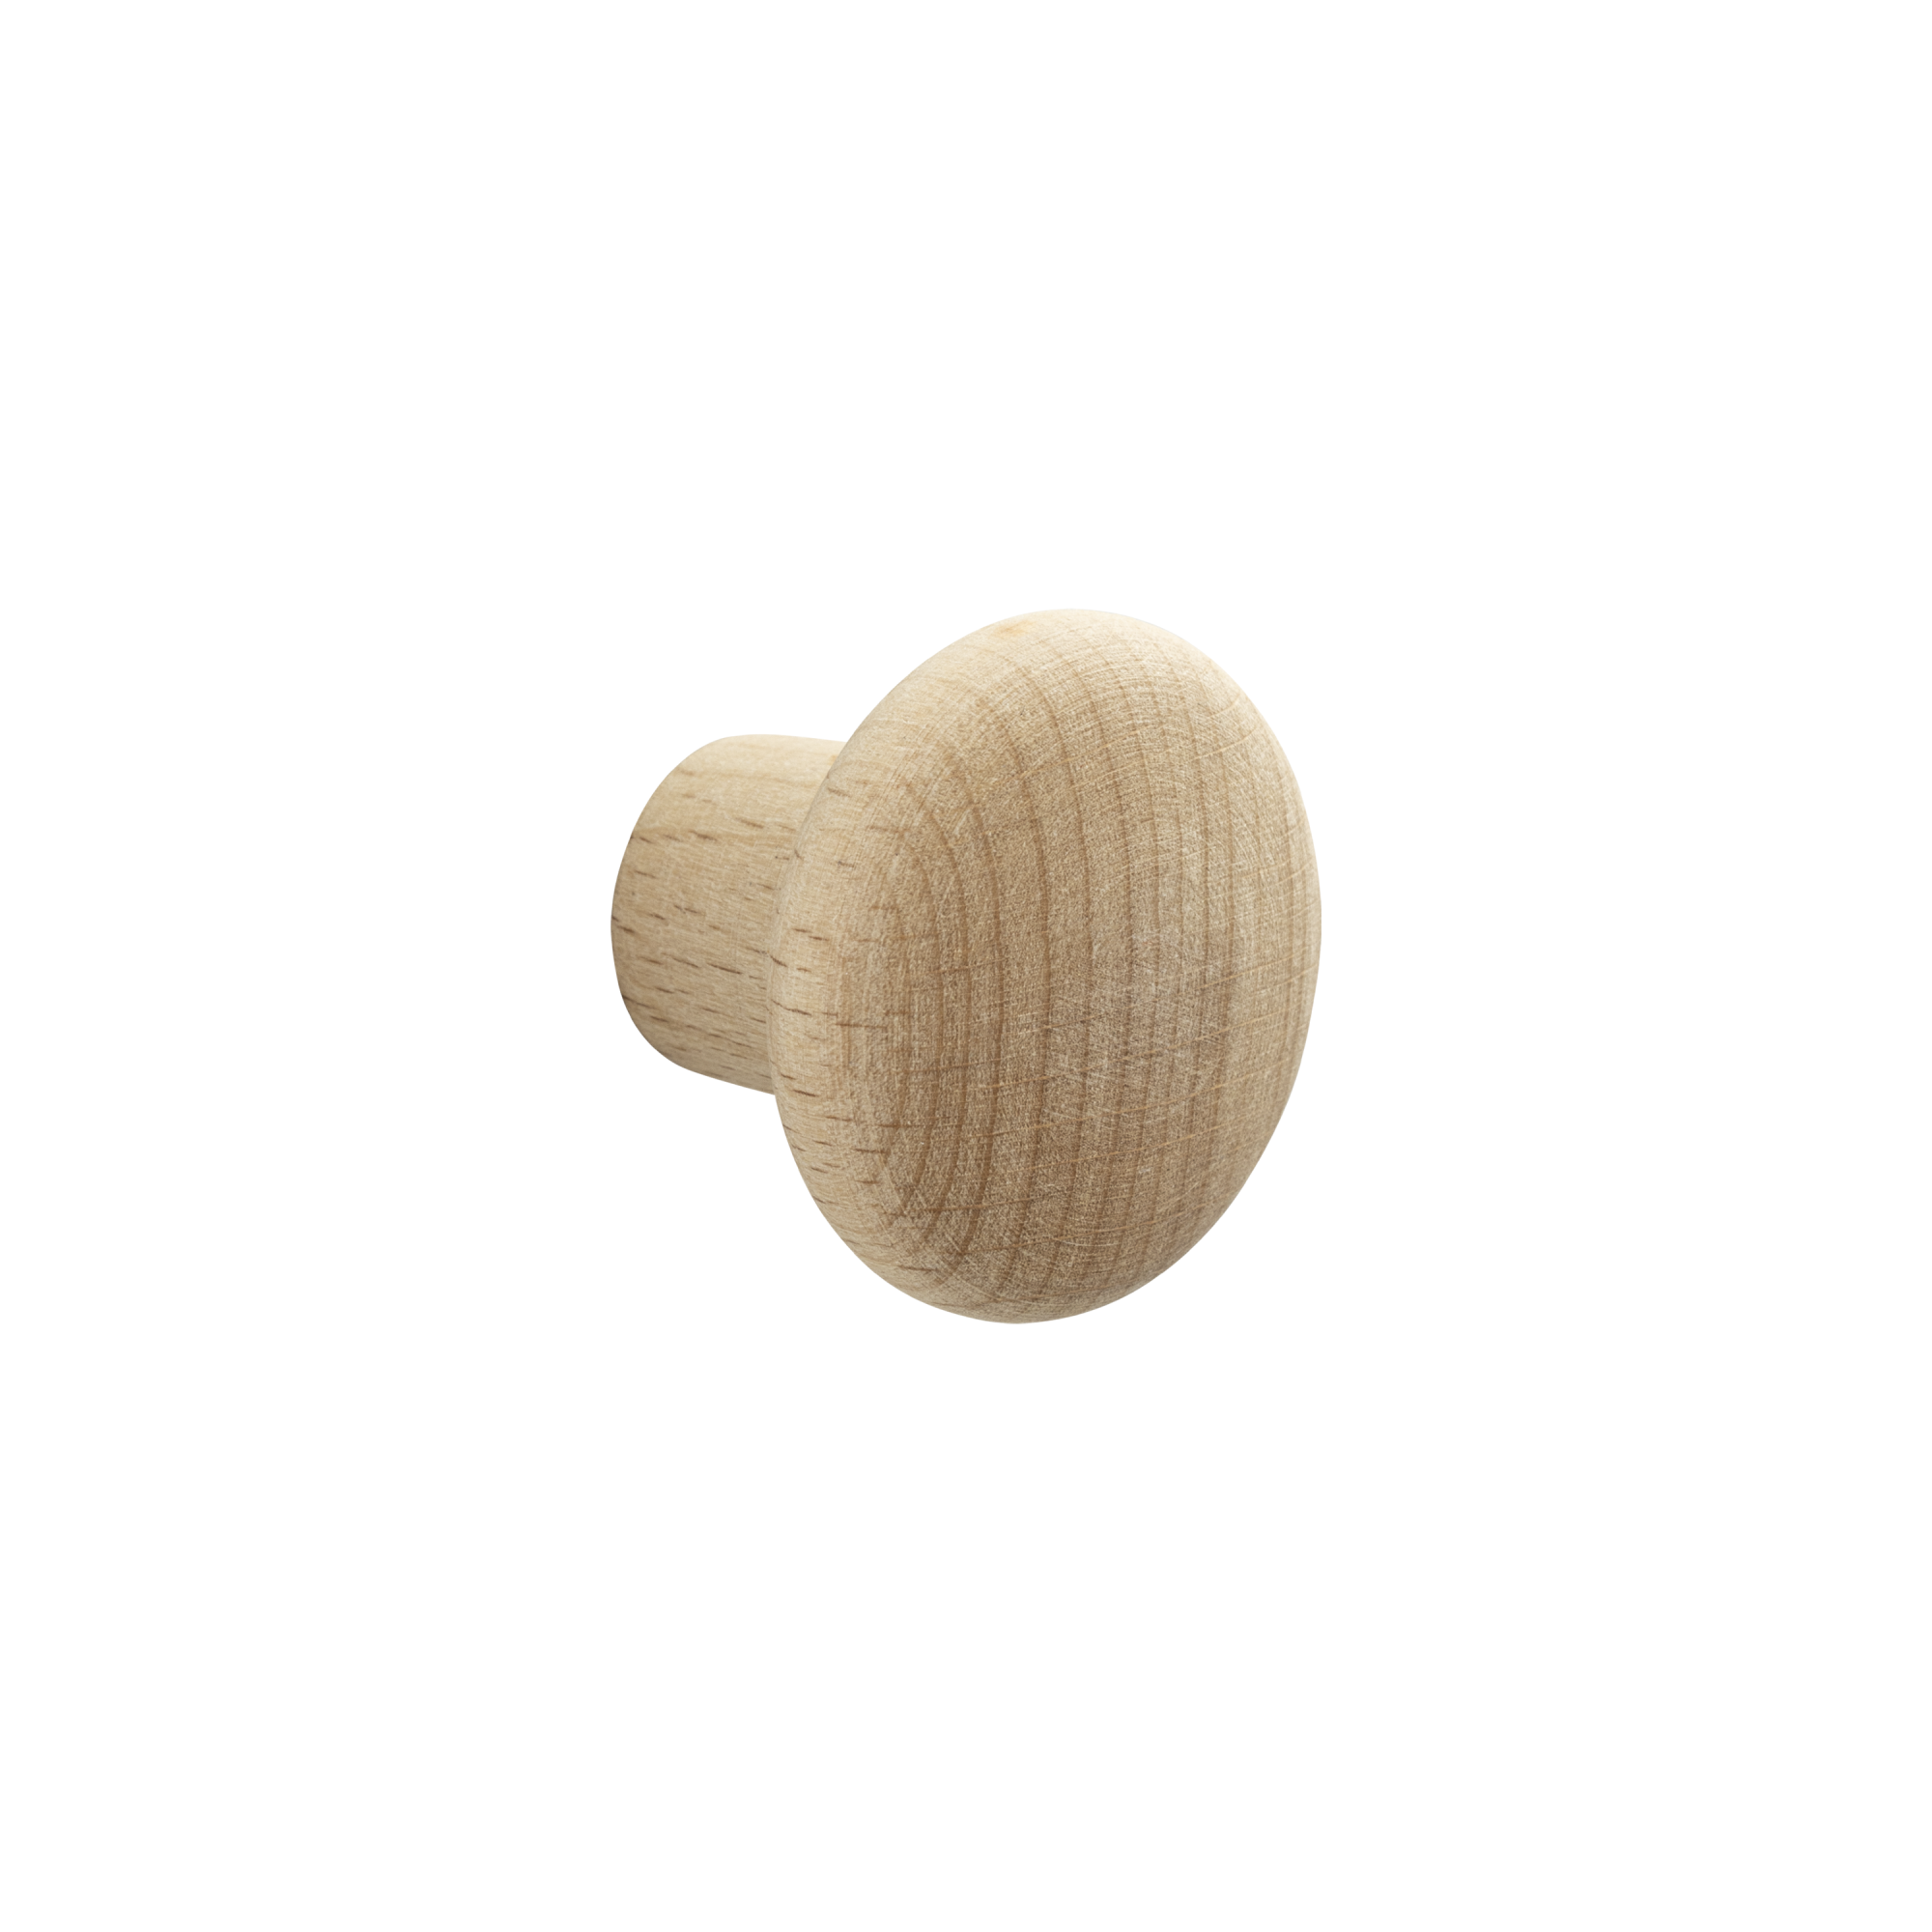 Pomo de mueble inspire dune en madera con acabado natural, ø 30 mm